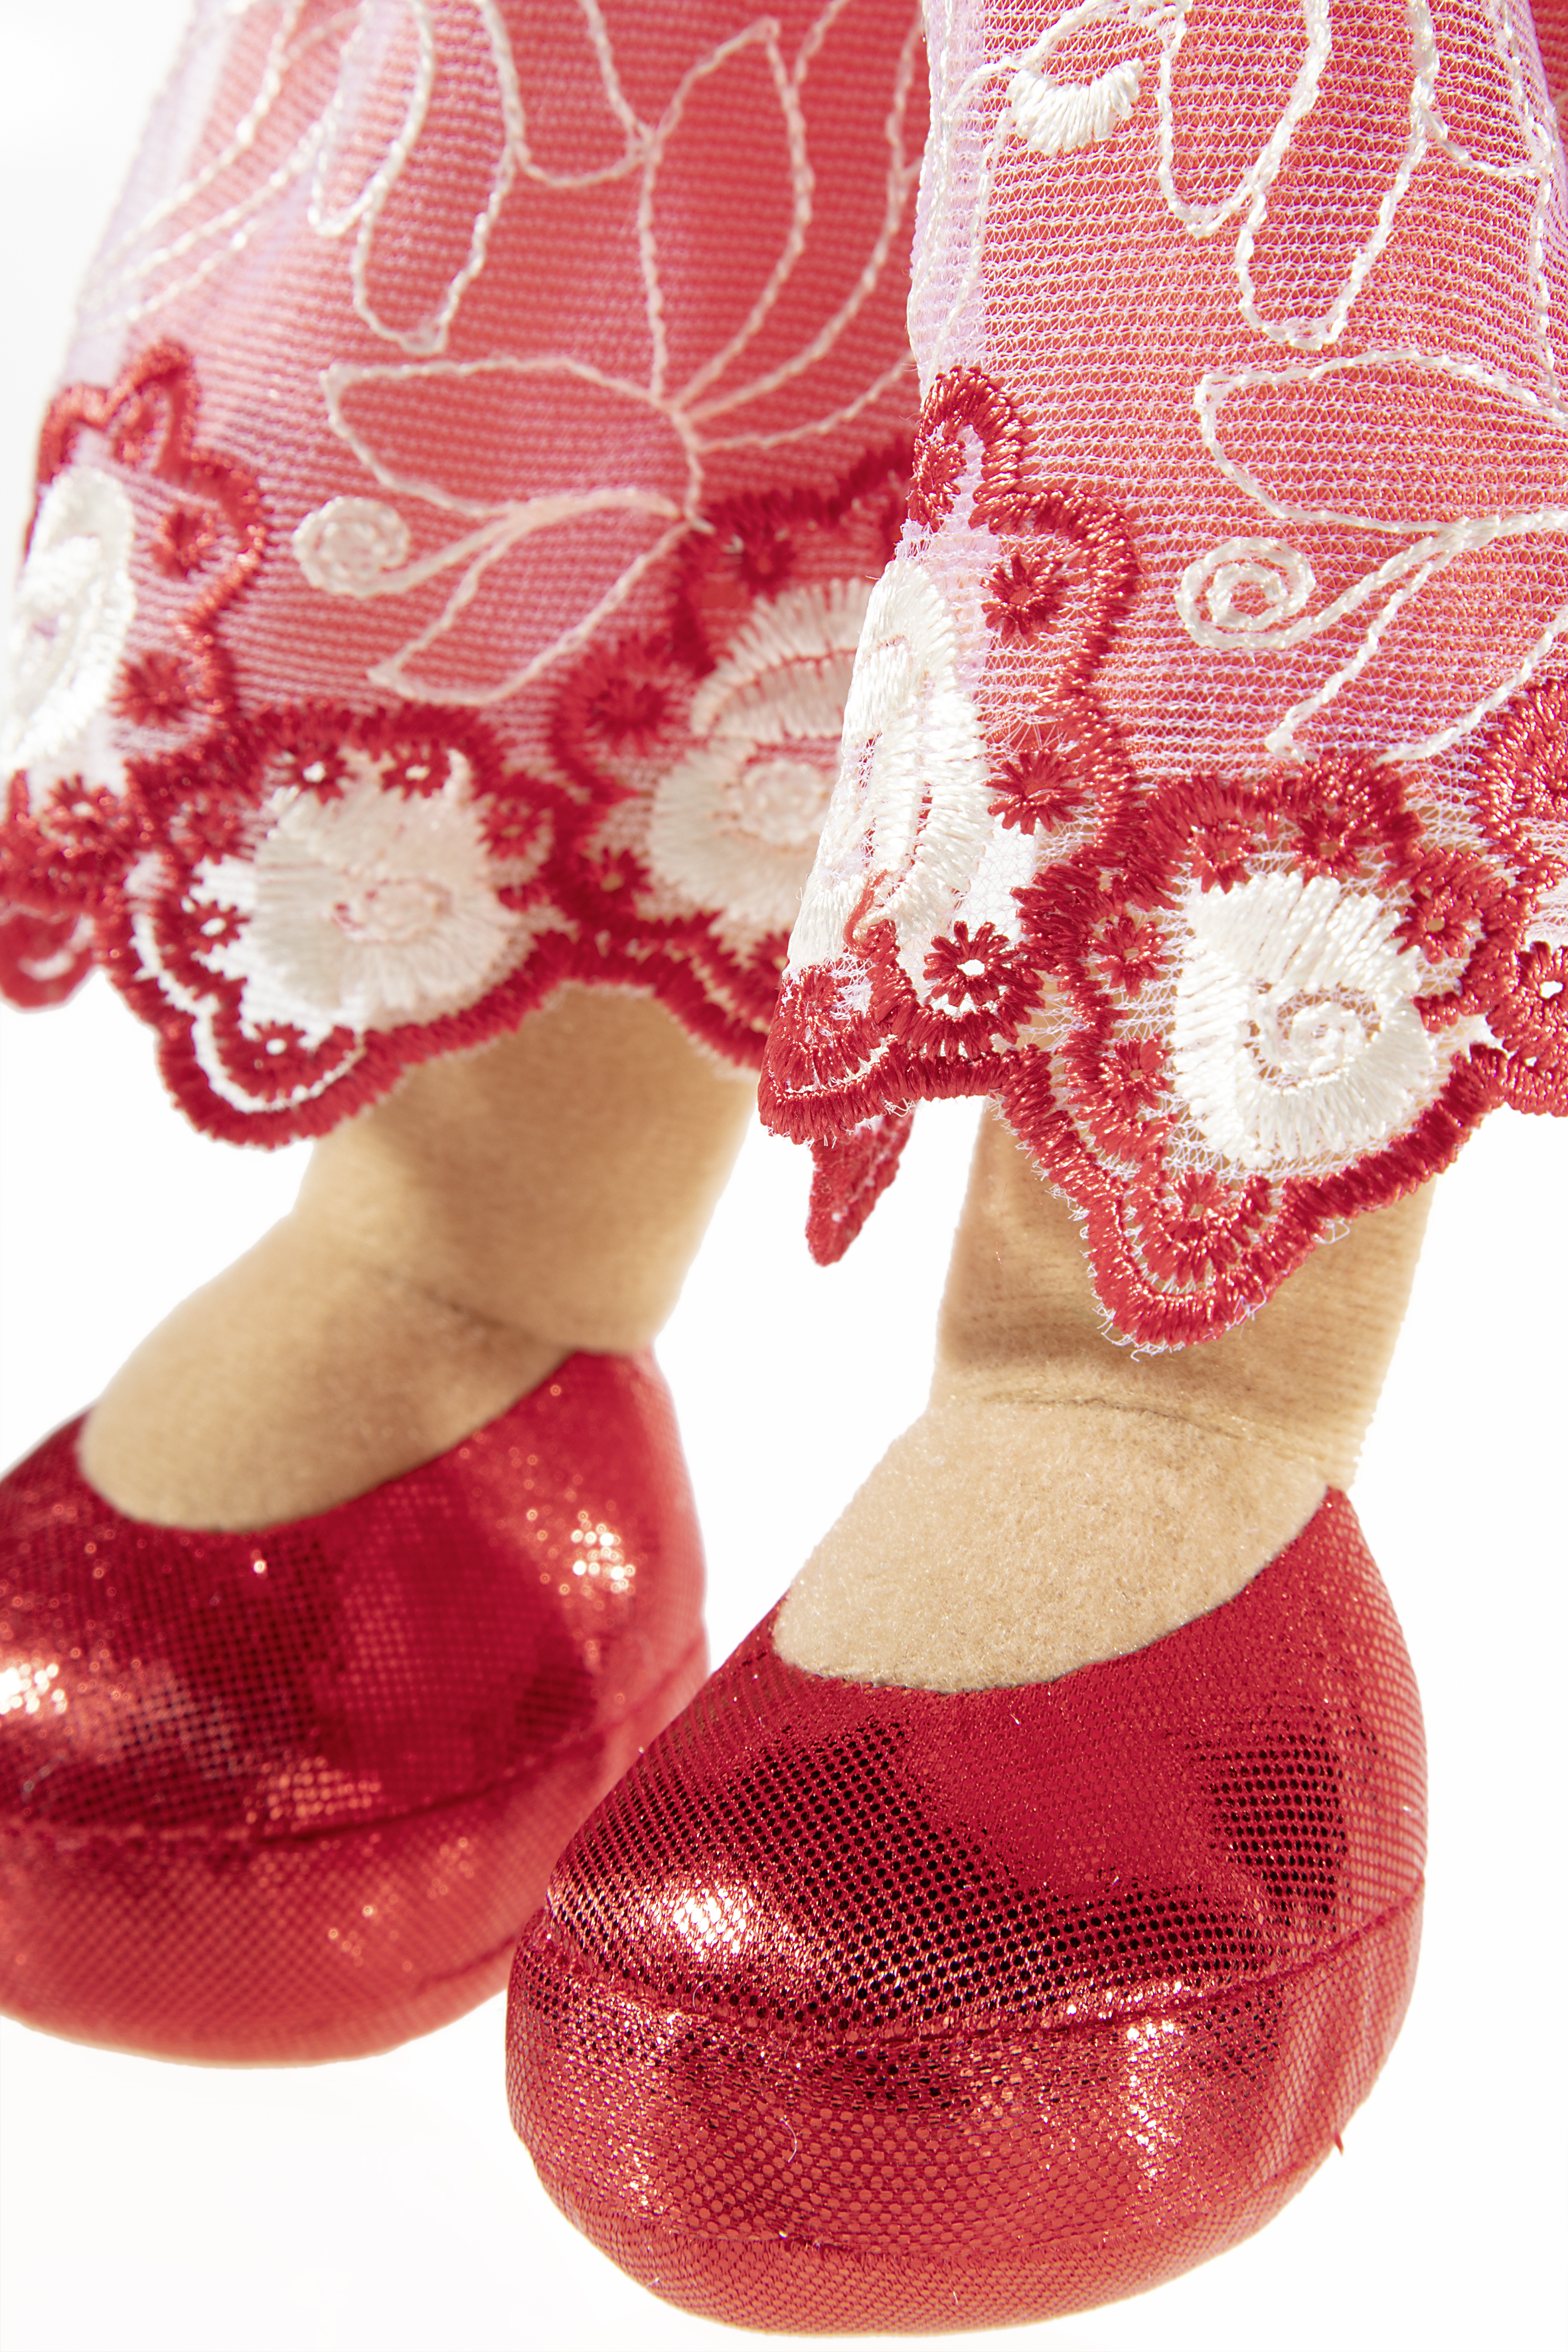 Heunec Bella-Rossa in 35cm aus der Bambola Dolce Serie mit rot-schwarzen Haaren Schuhe